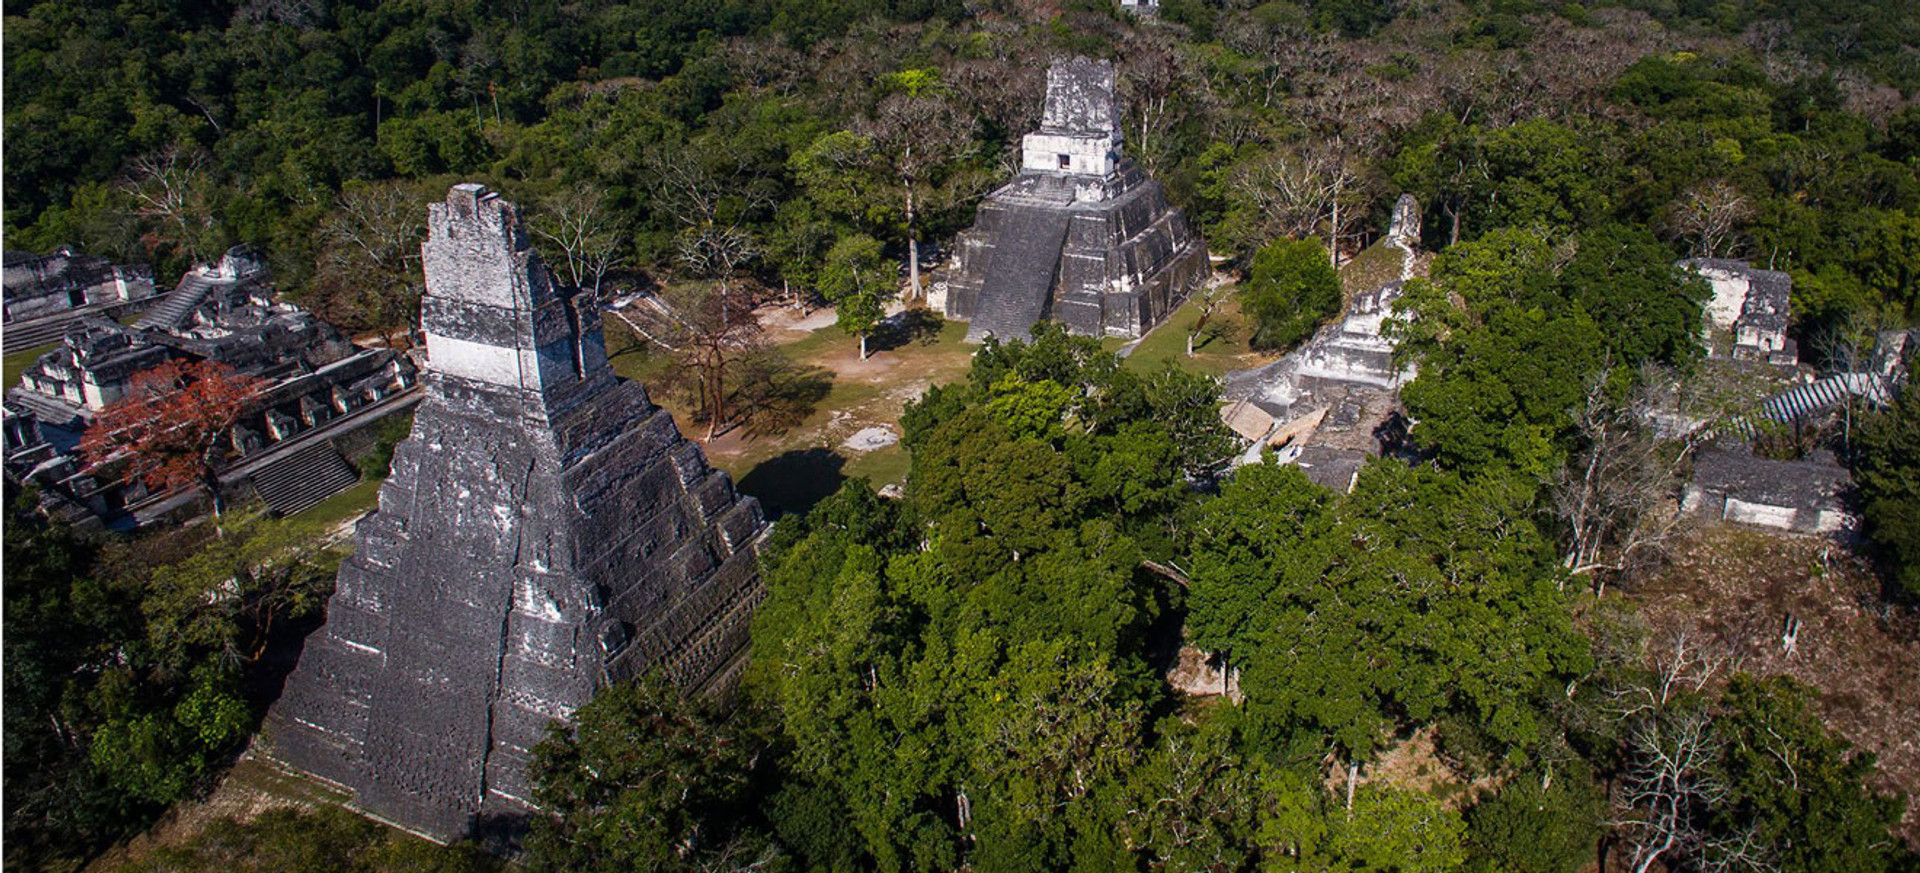 Круто розгадувати загадки, які ніхто не може розгадати: як Юрій Полюхович став авторитетним дослідником майя у світі